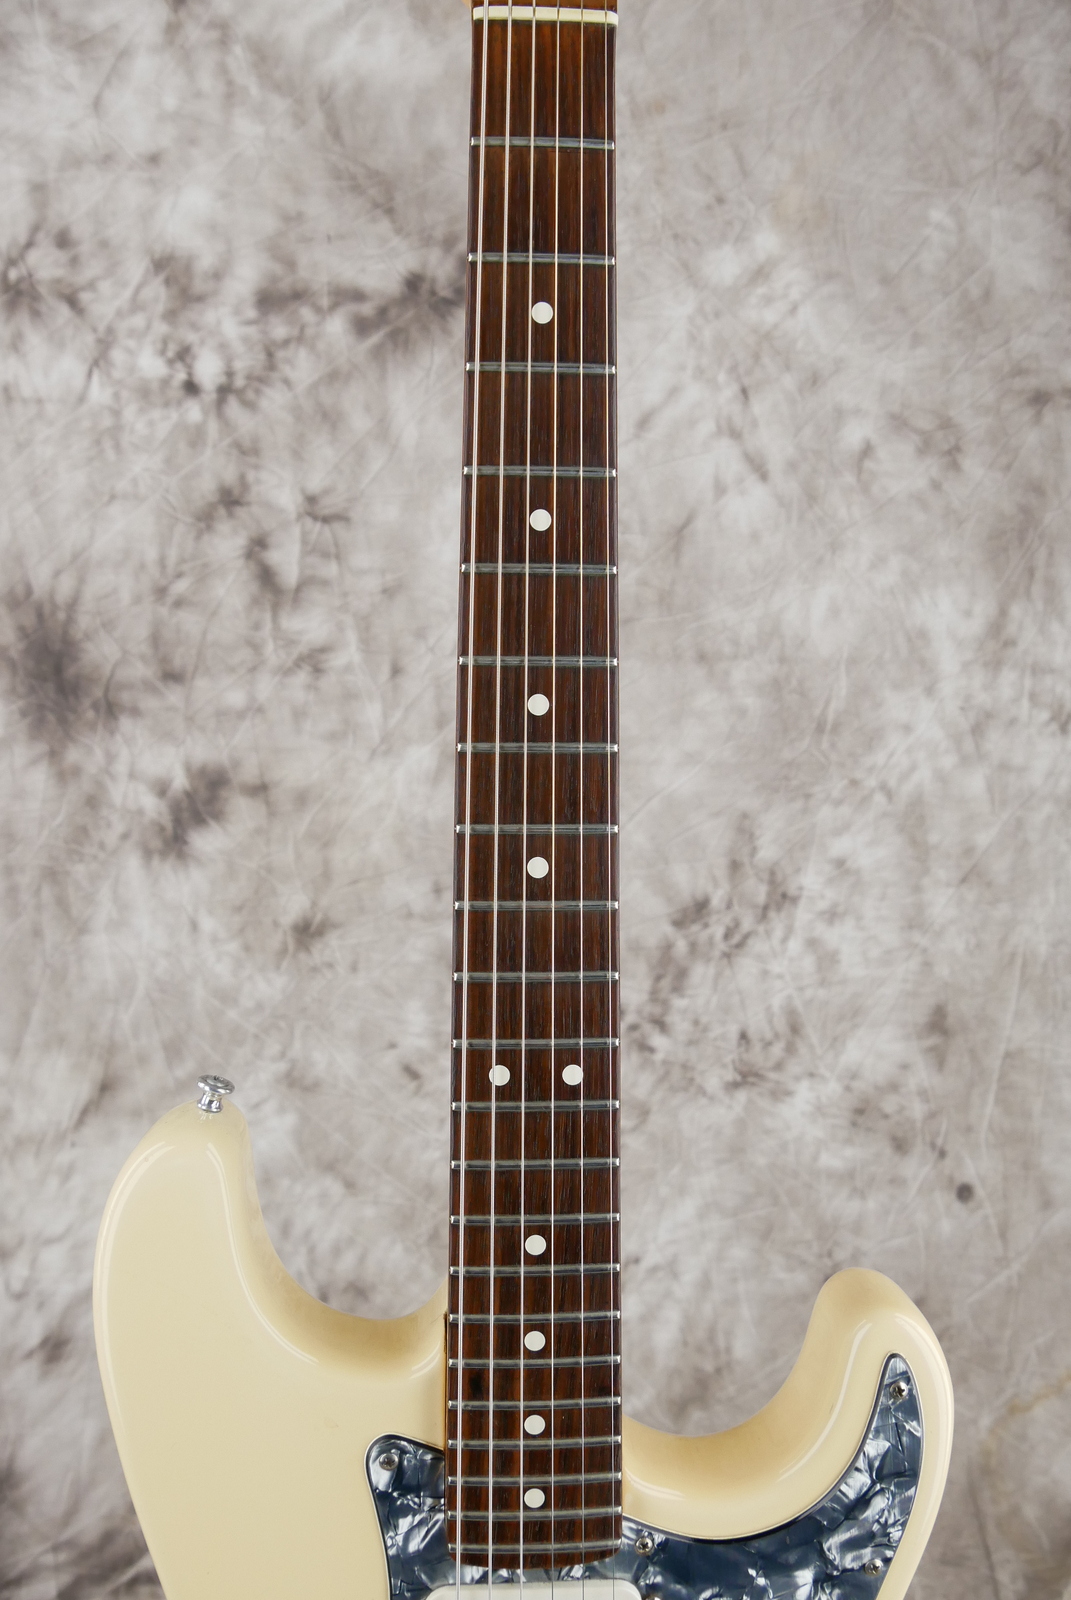 Fender_Stratocaster_AM_Standard_olympic_white_1995-011.JPG